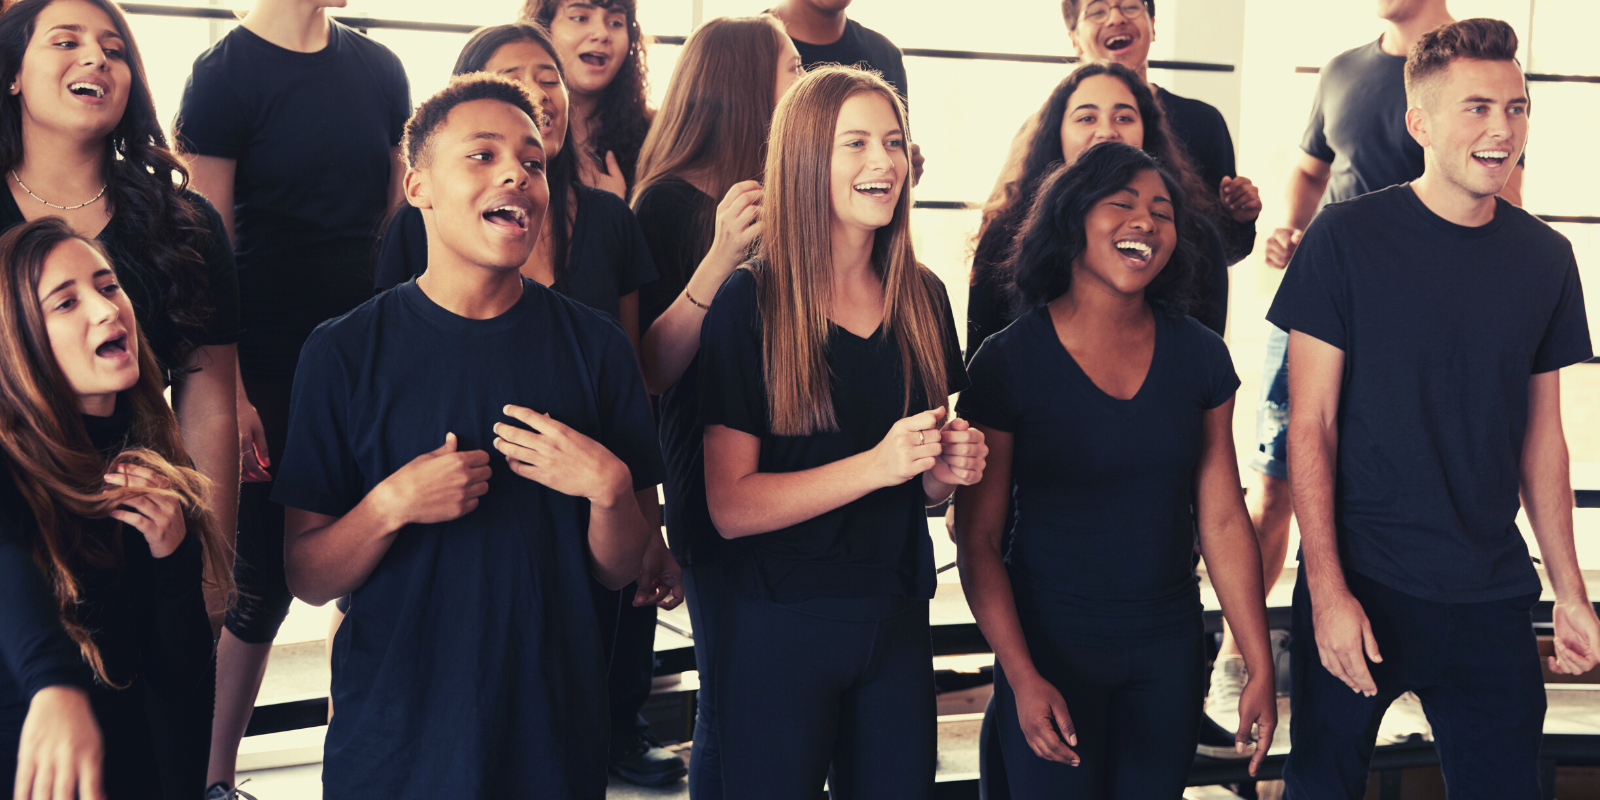 Junge Menschen die in einem Chor singen.